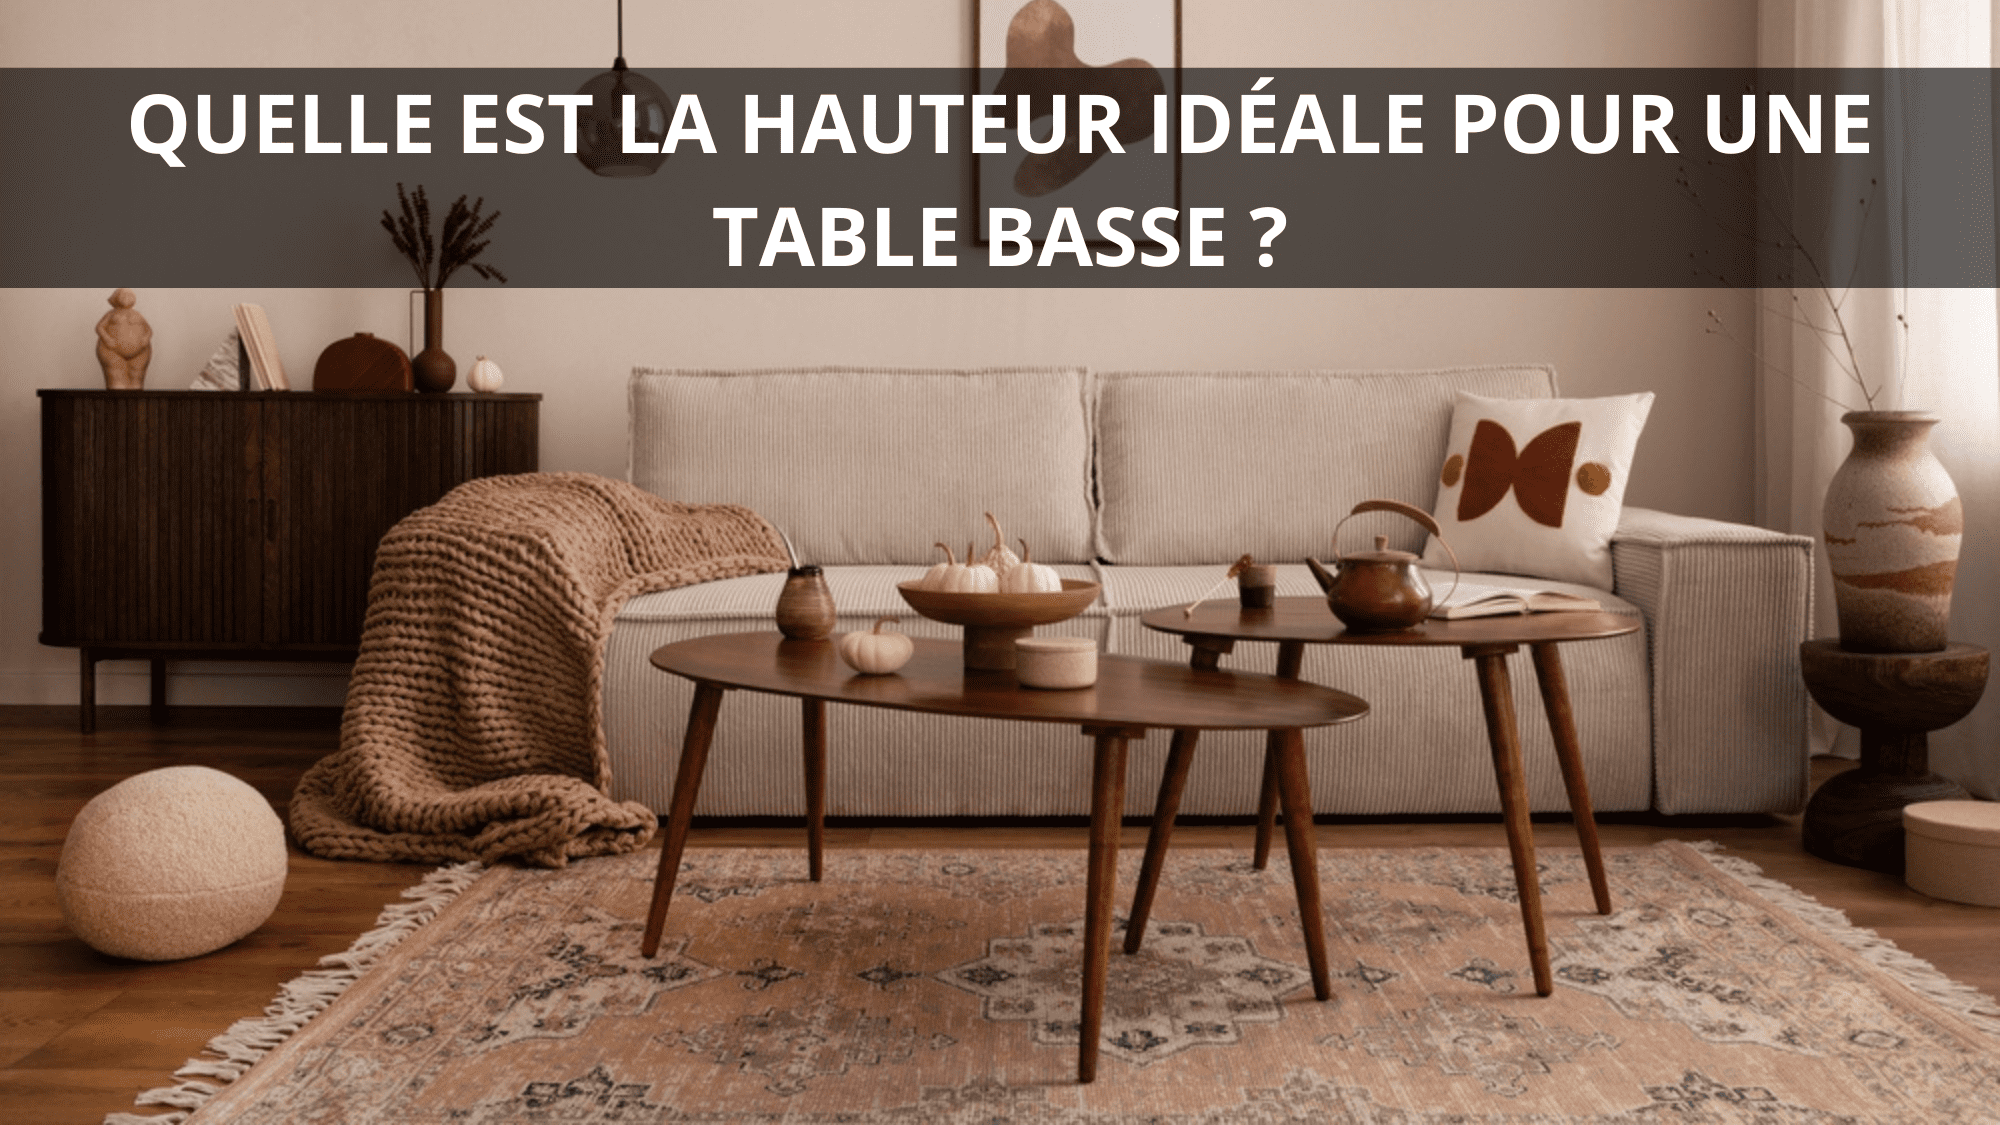 Quelle est la hauteur idéale pour une table basse ?